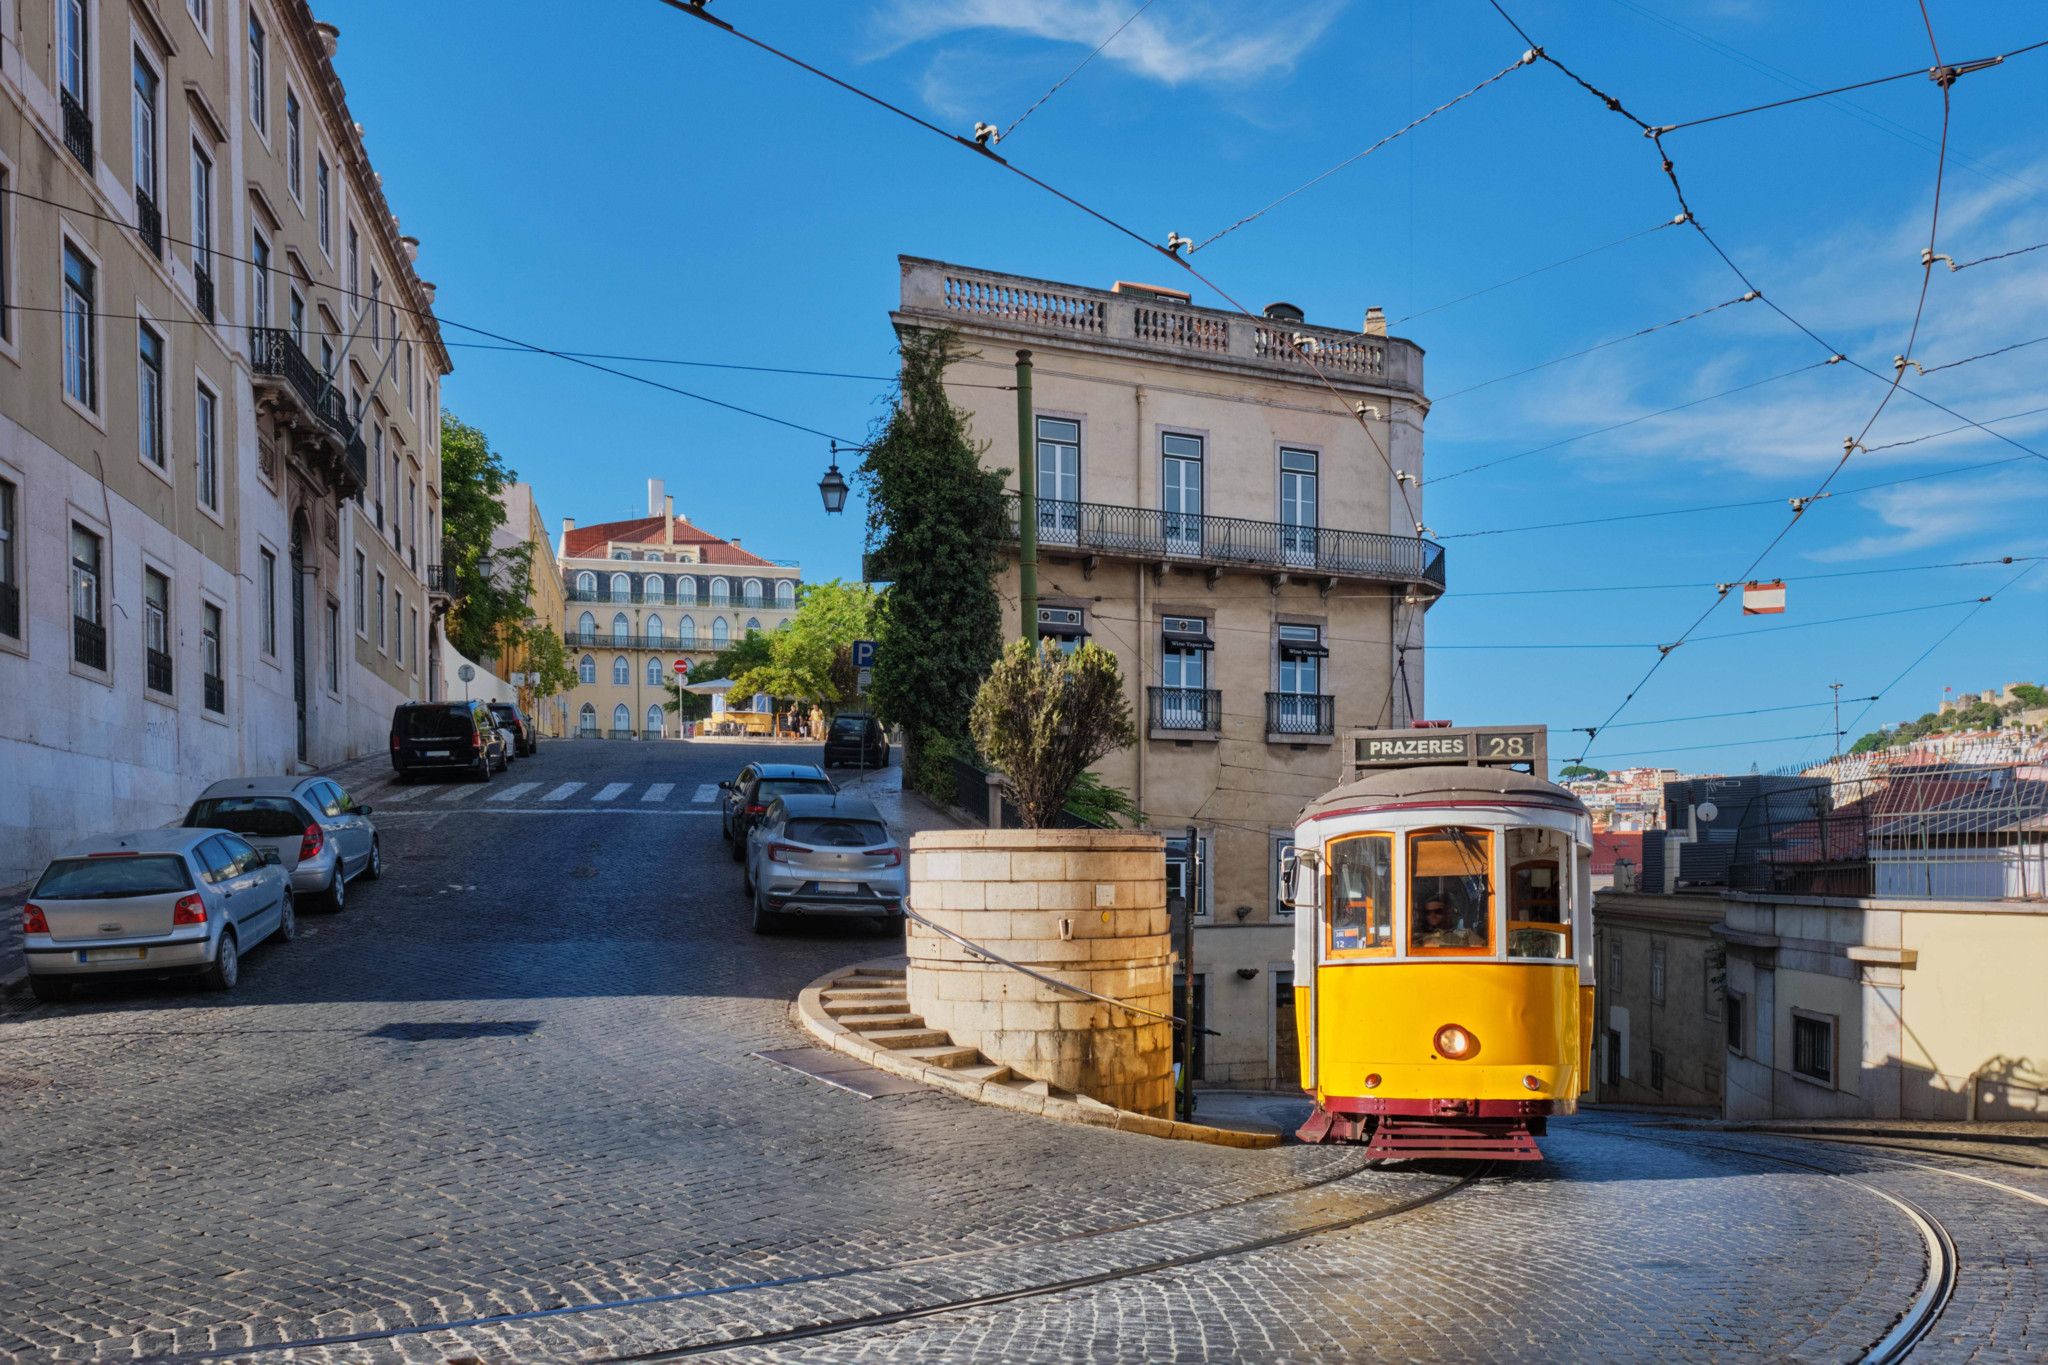 Lisbonne, c'est aussi ses trams mythiques à ne pas manquer